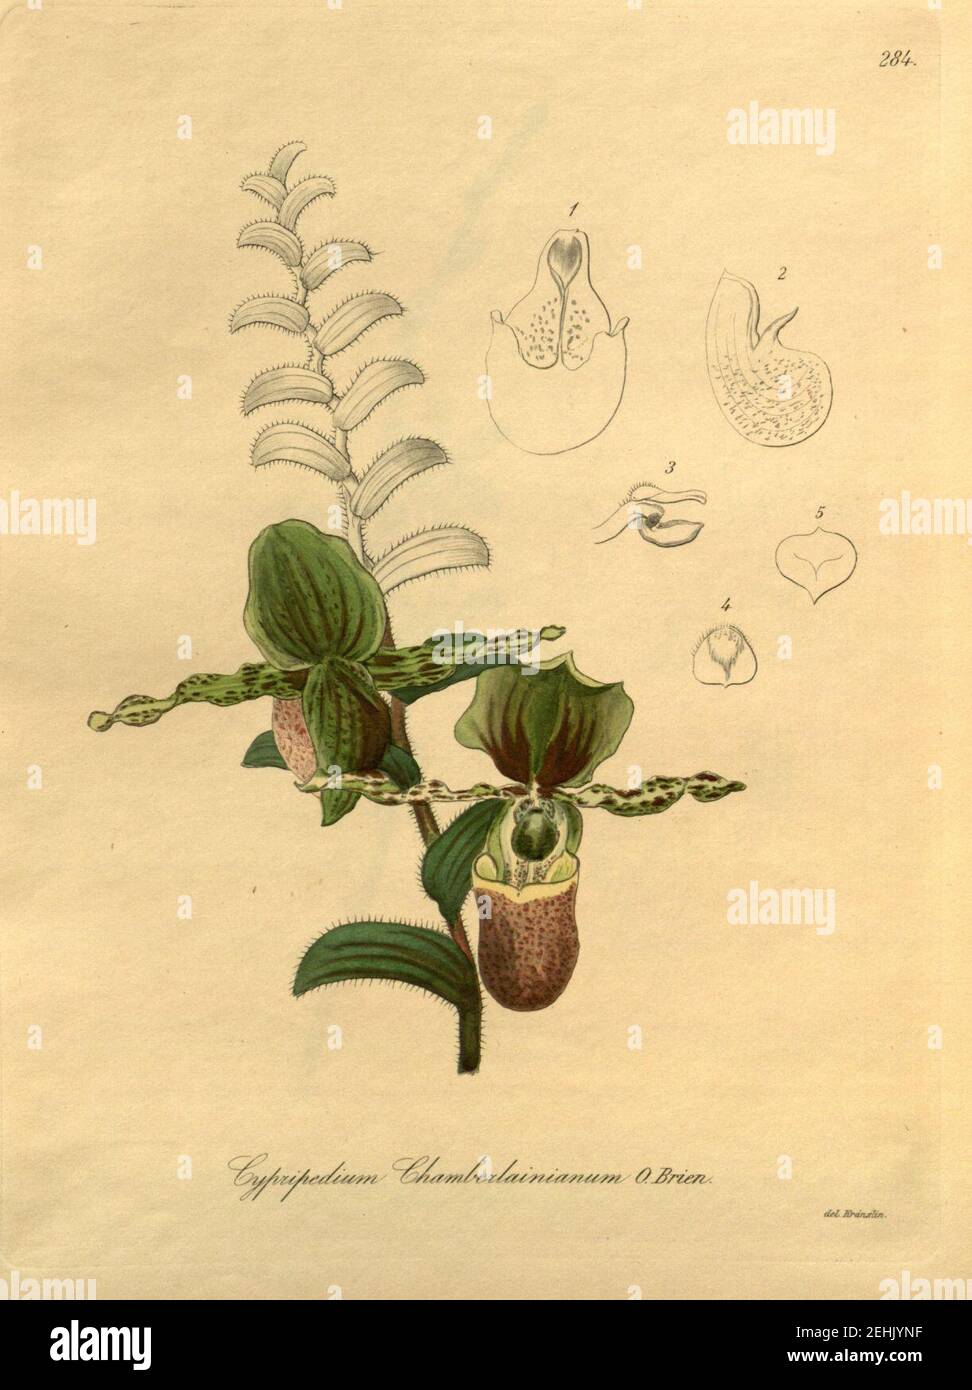 Paphiopedilum victoria-regina (als Cypripedium chamberlainianum) - Xenia 3-284 (1896). Stockfoto